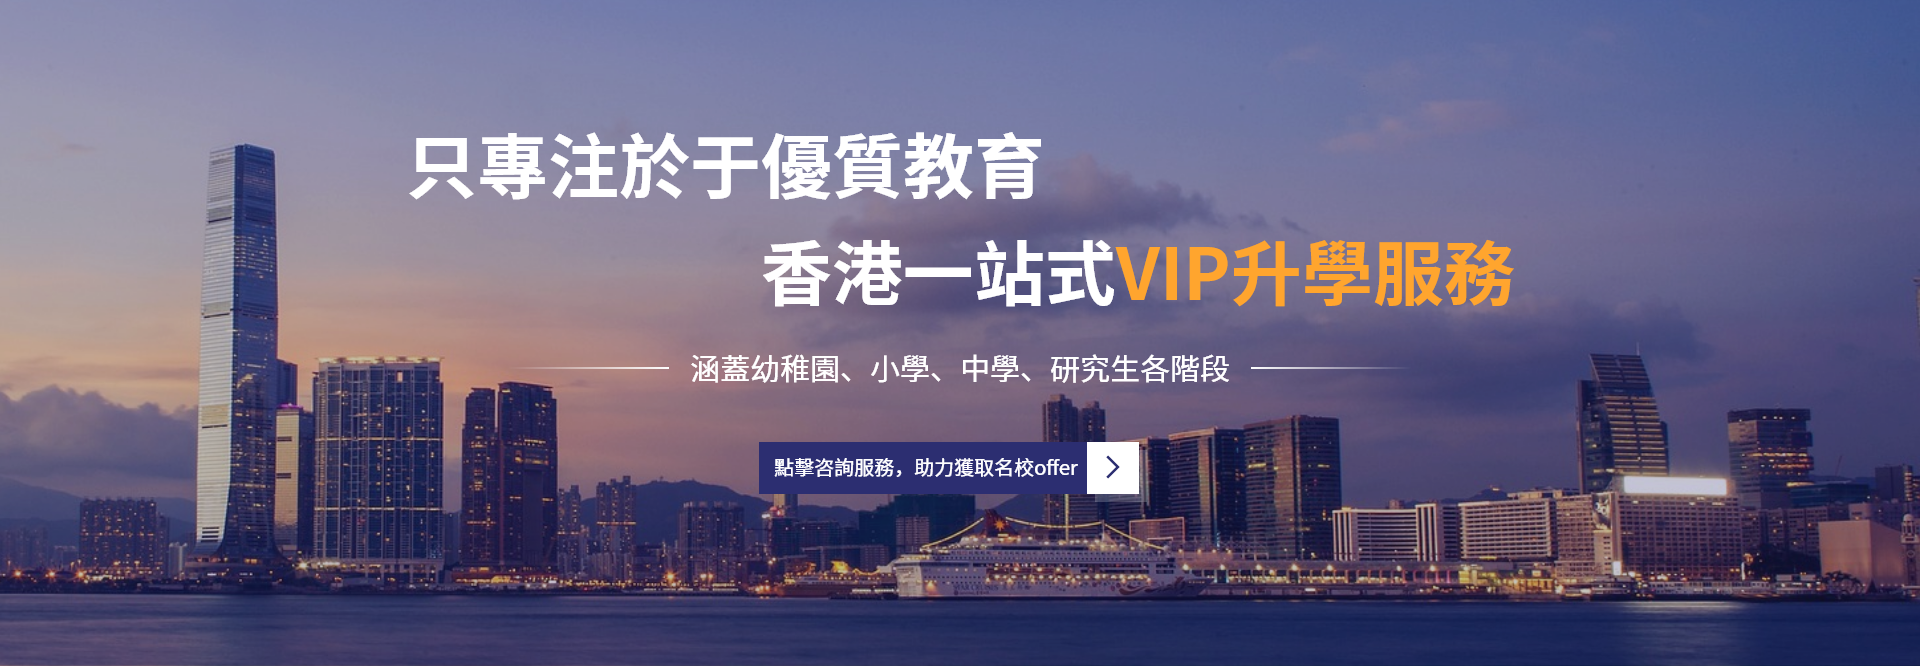 香港优质学校一站式VIP名校升学服务